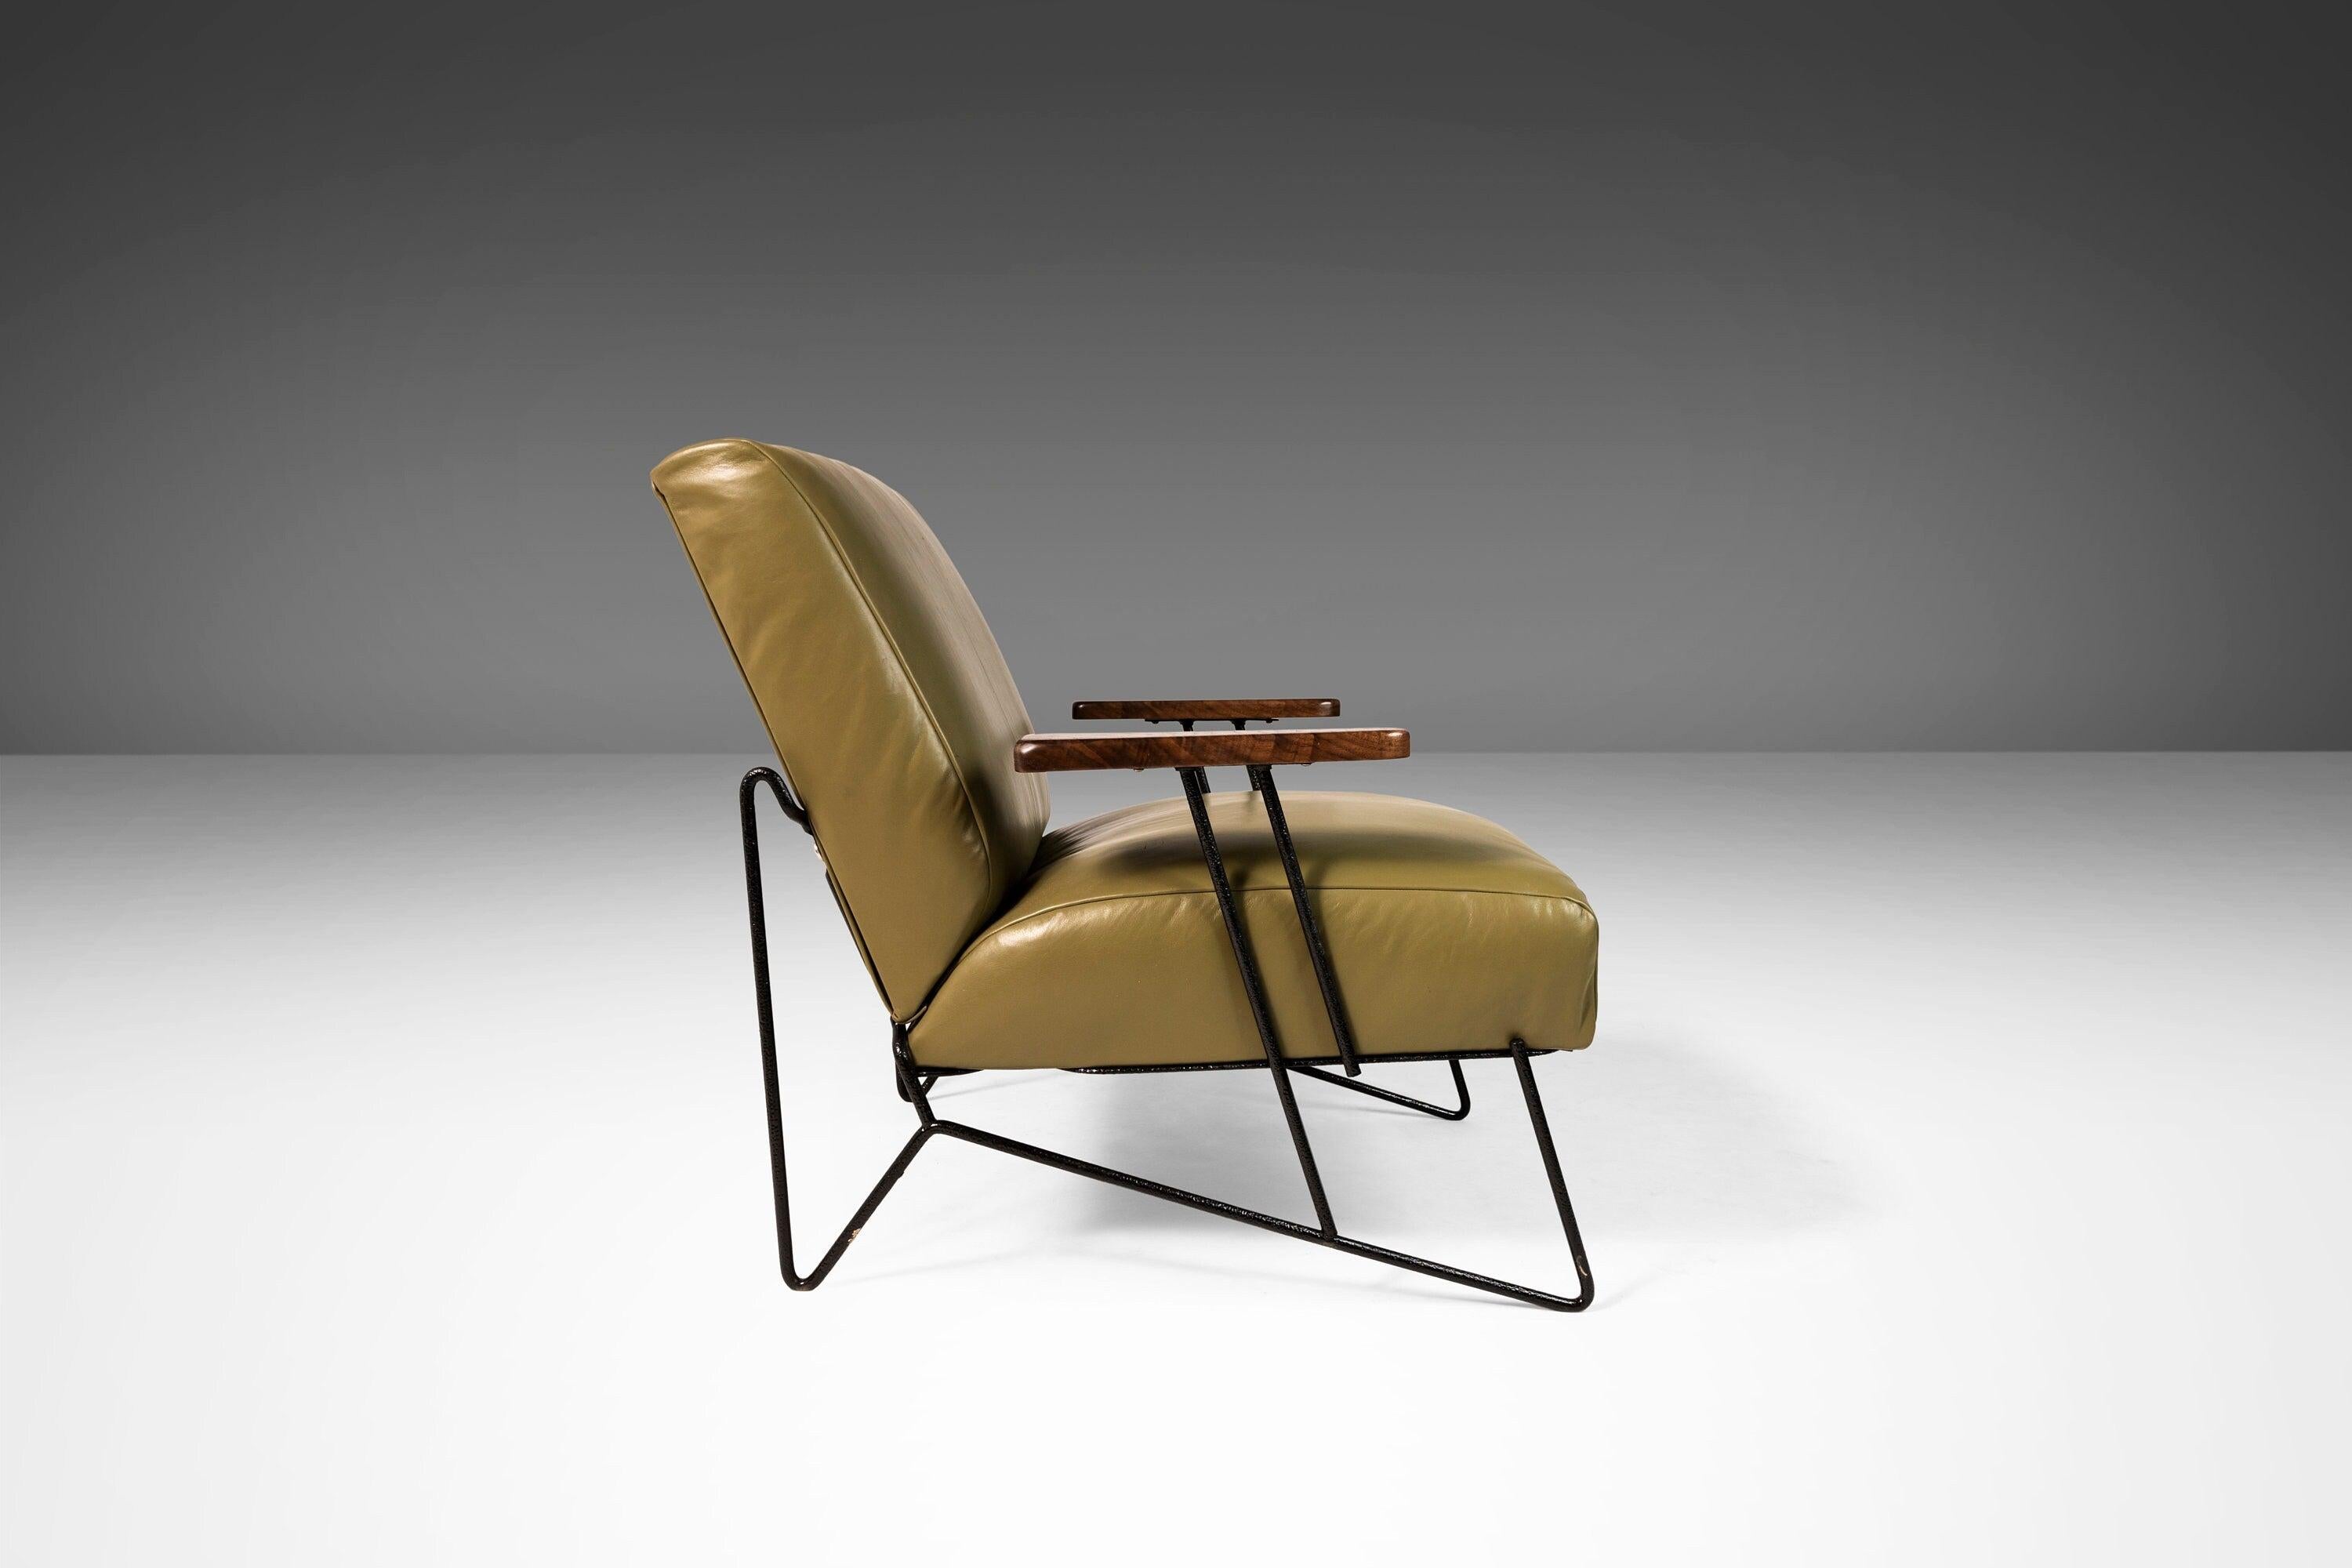 Klassisches Design trifft auf moderne Materialien. Dieses äußerst seltene Set aus Stuhl und Ottomane, das von Dan Johnson entworfen und von Pacific Iron zwischen den späten 40er und frühen 50er Jahren hergestellt wurde, ist vor kurzem komplett